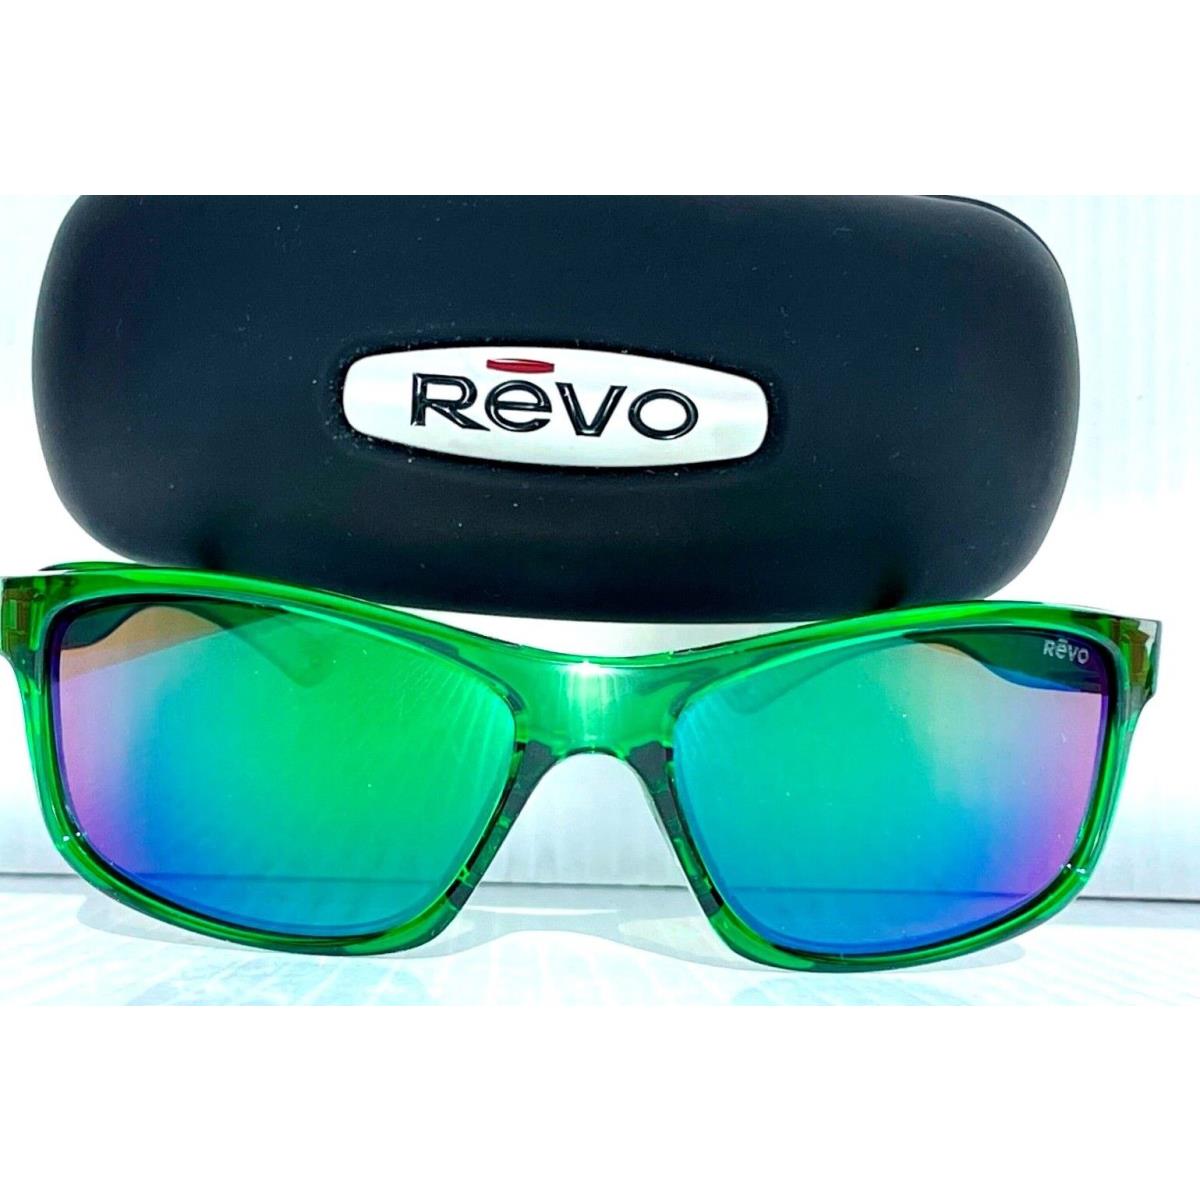 Revo sunglasses Harness - Green Frame, Green Lens 0